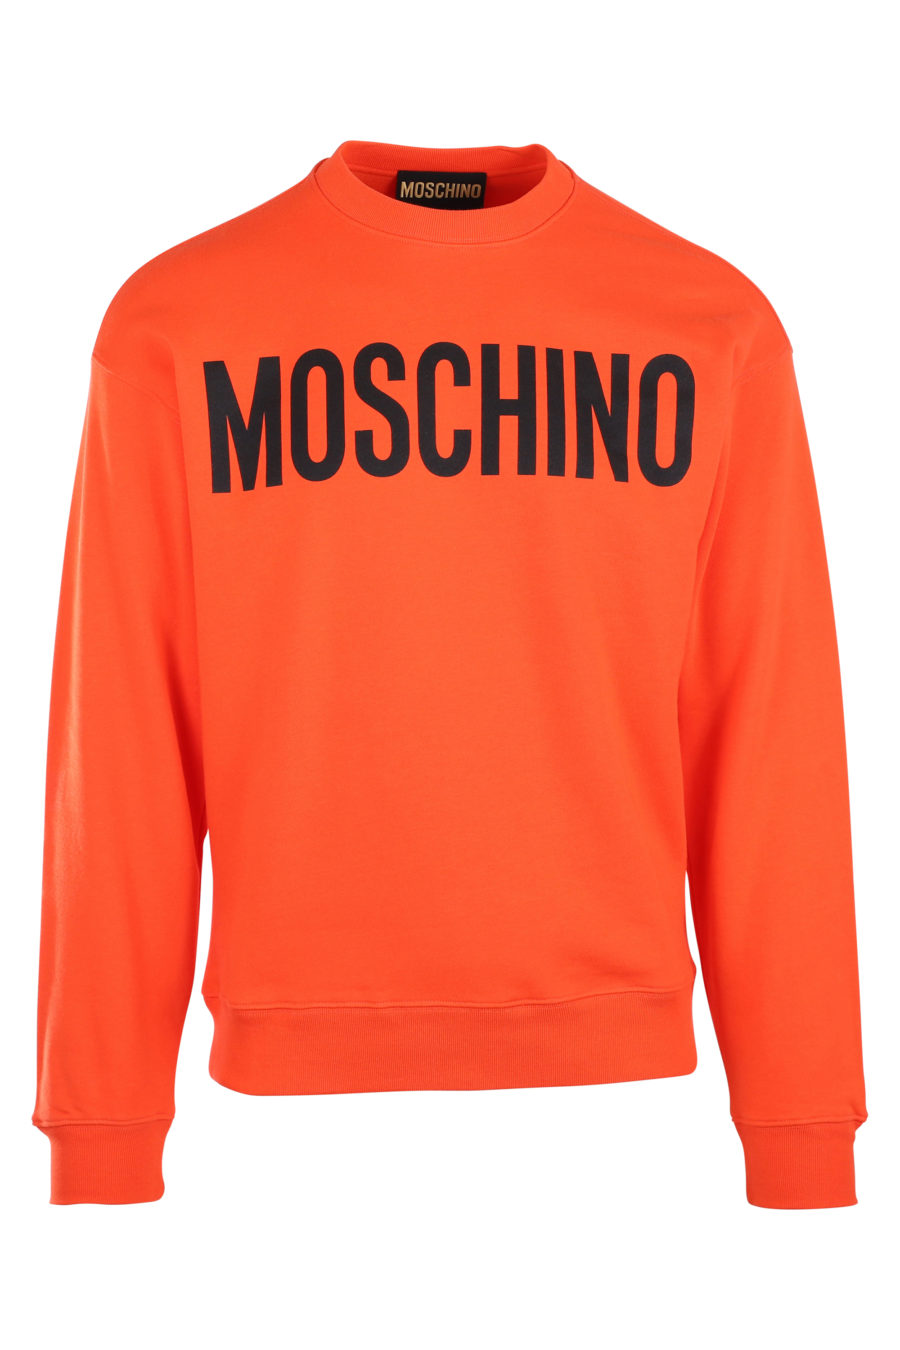 Orange sweatshirt with large "fantasy" logo - IMG 9942